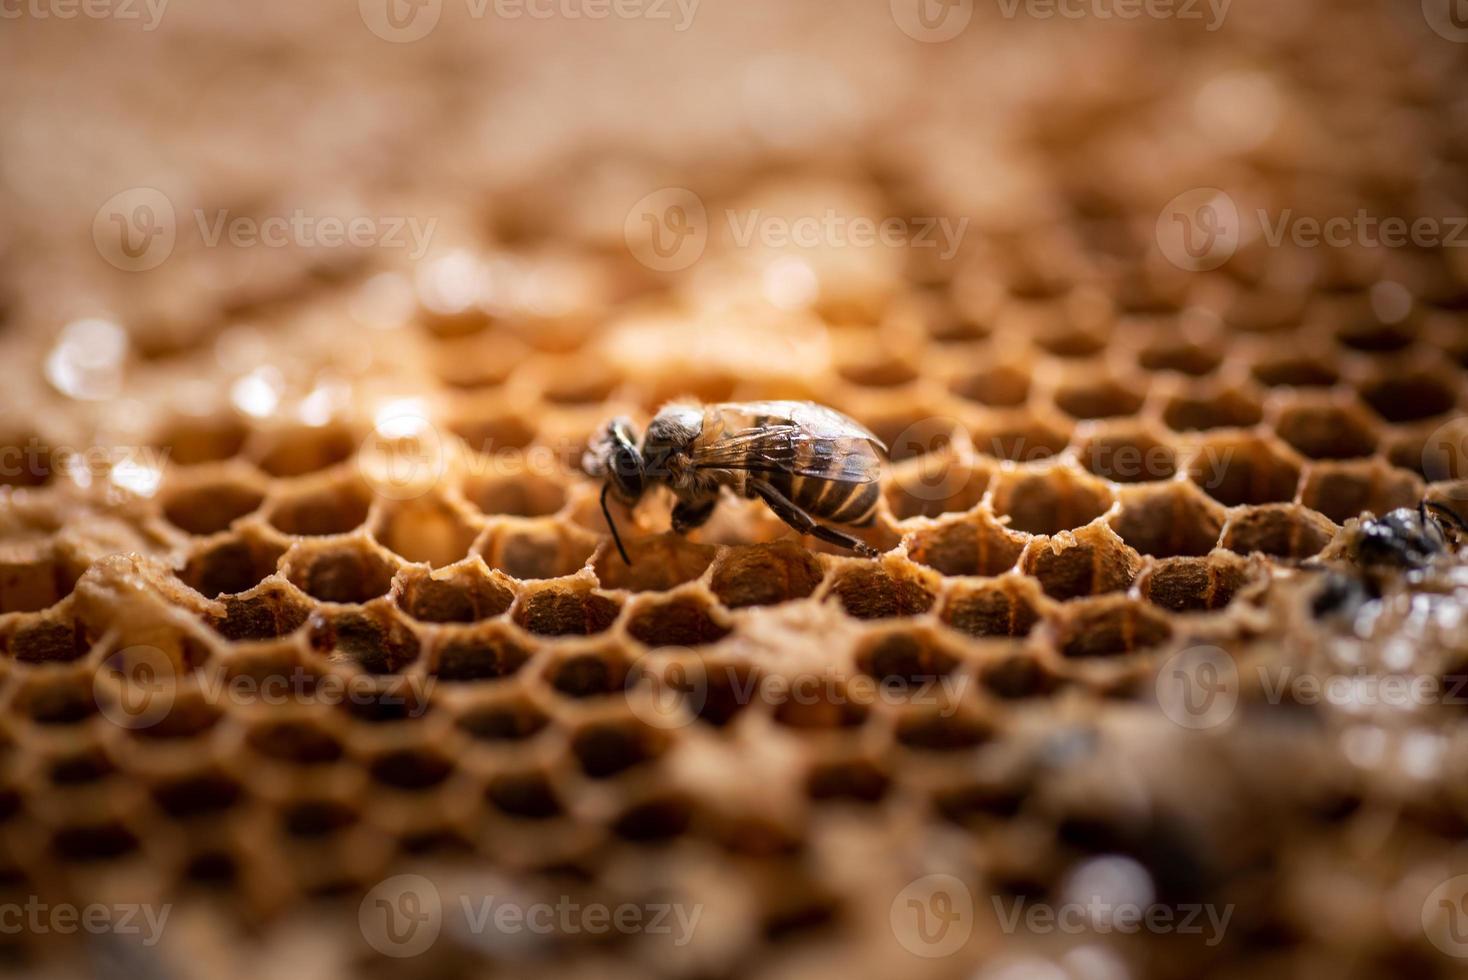 arbetarbi i sin bikupa i naturen foto